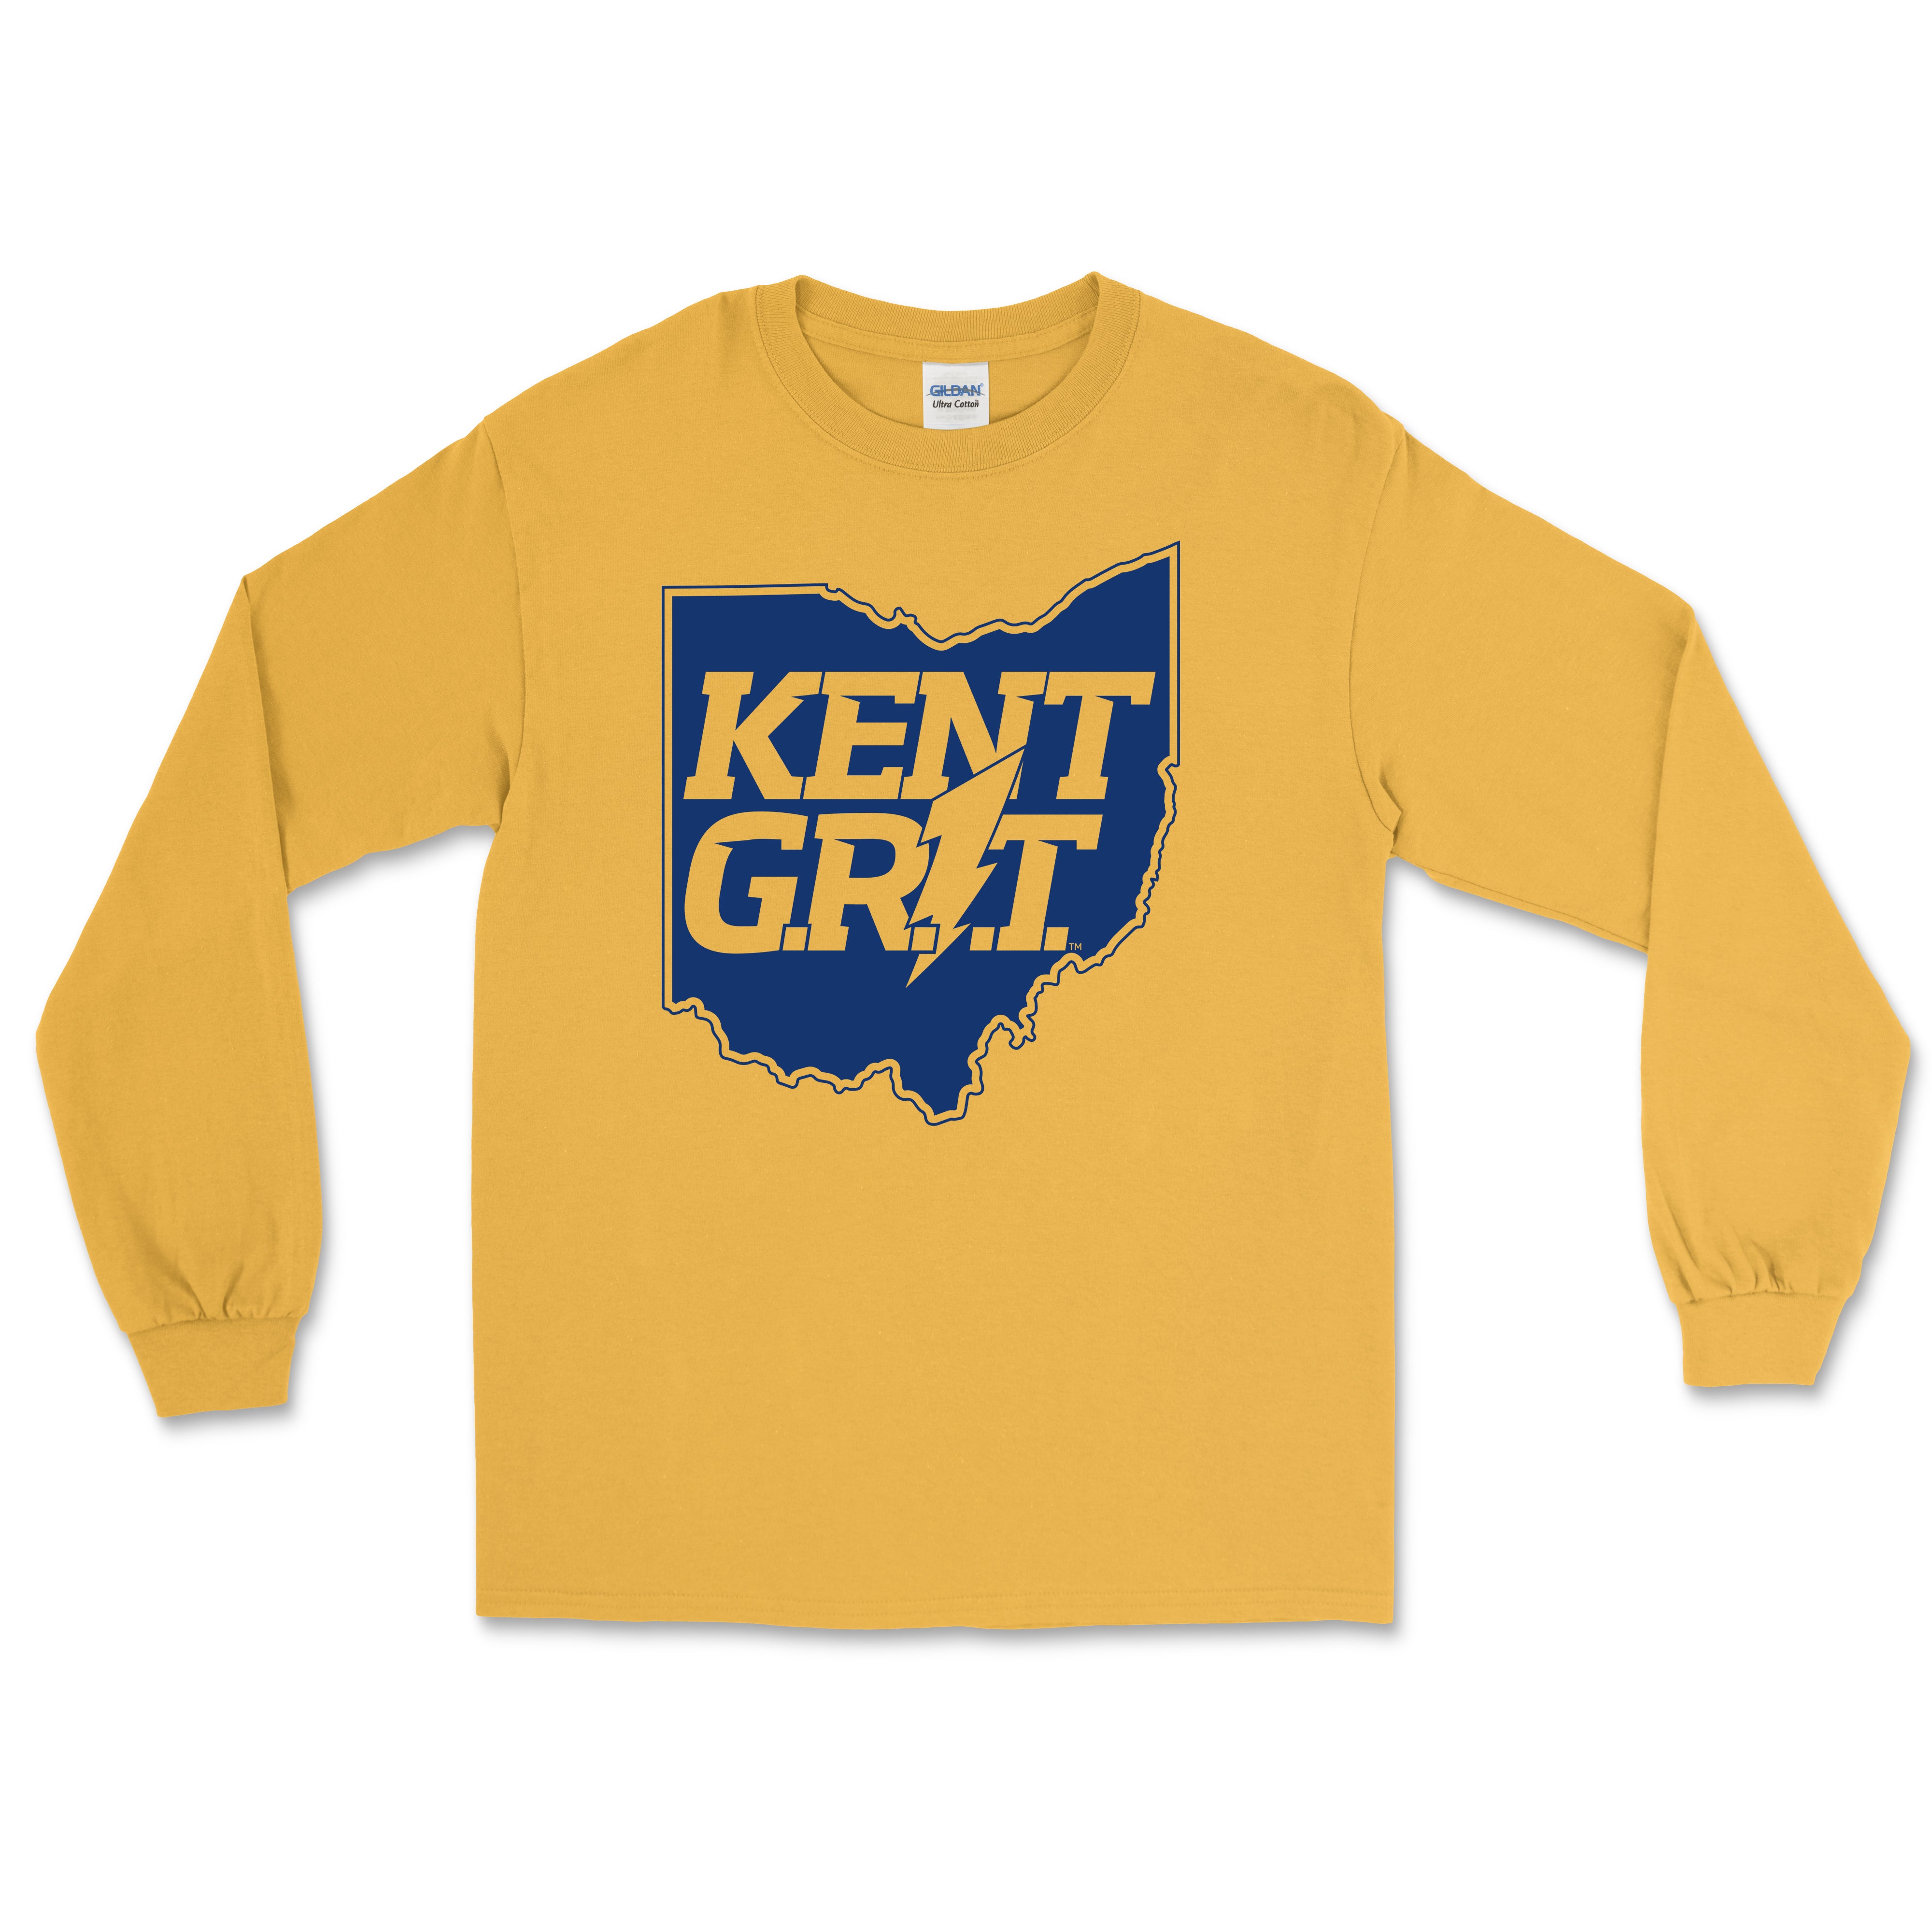 Kent Grit Gold Long Sleeve T-Shirt